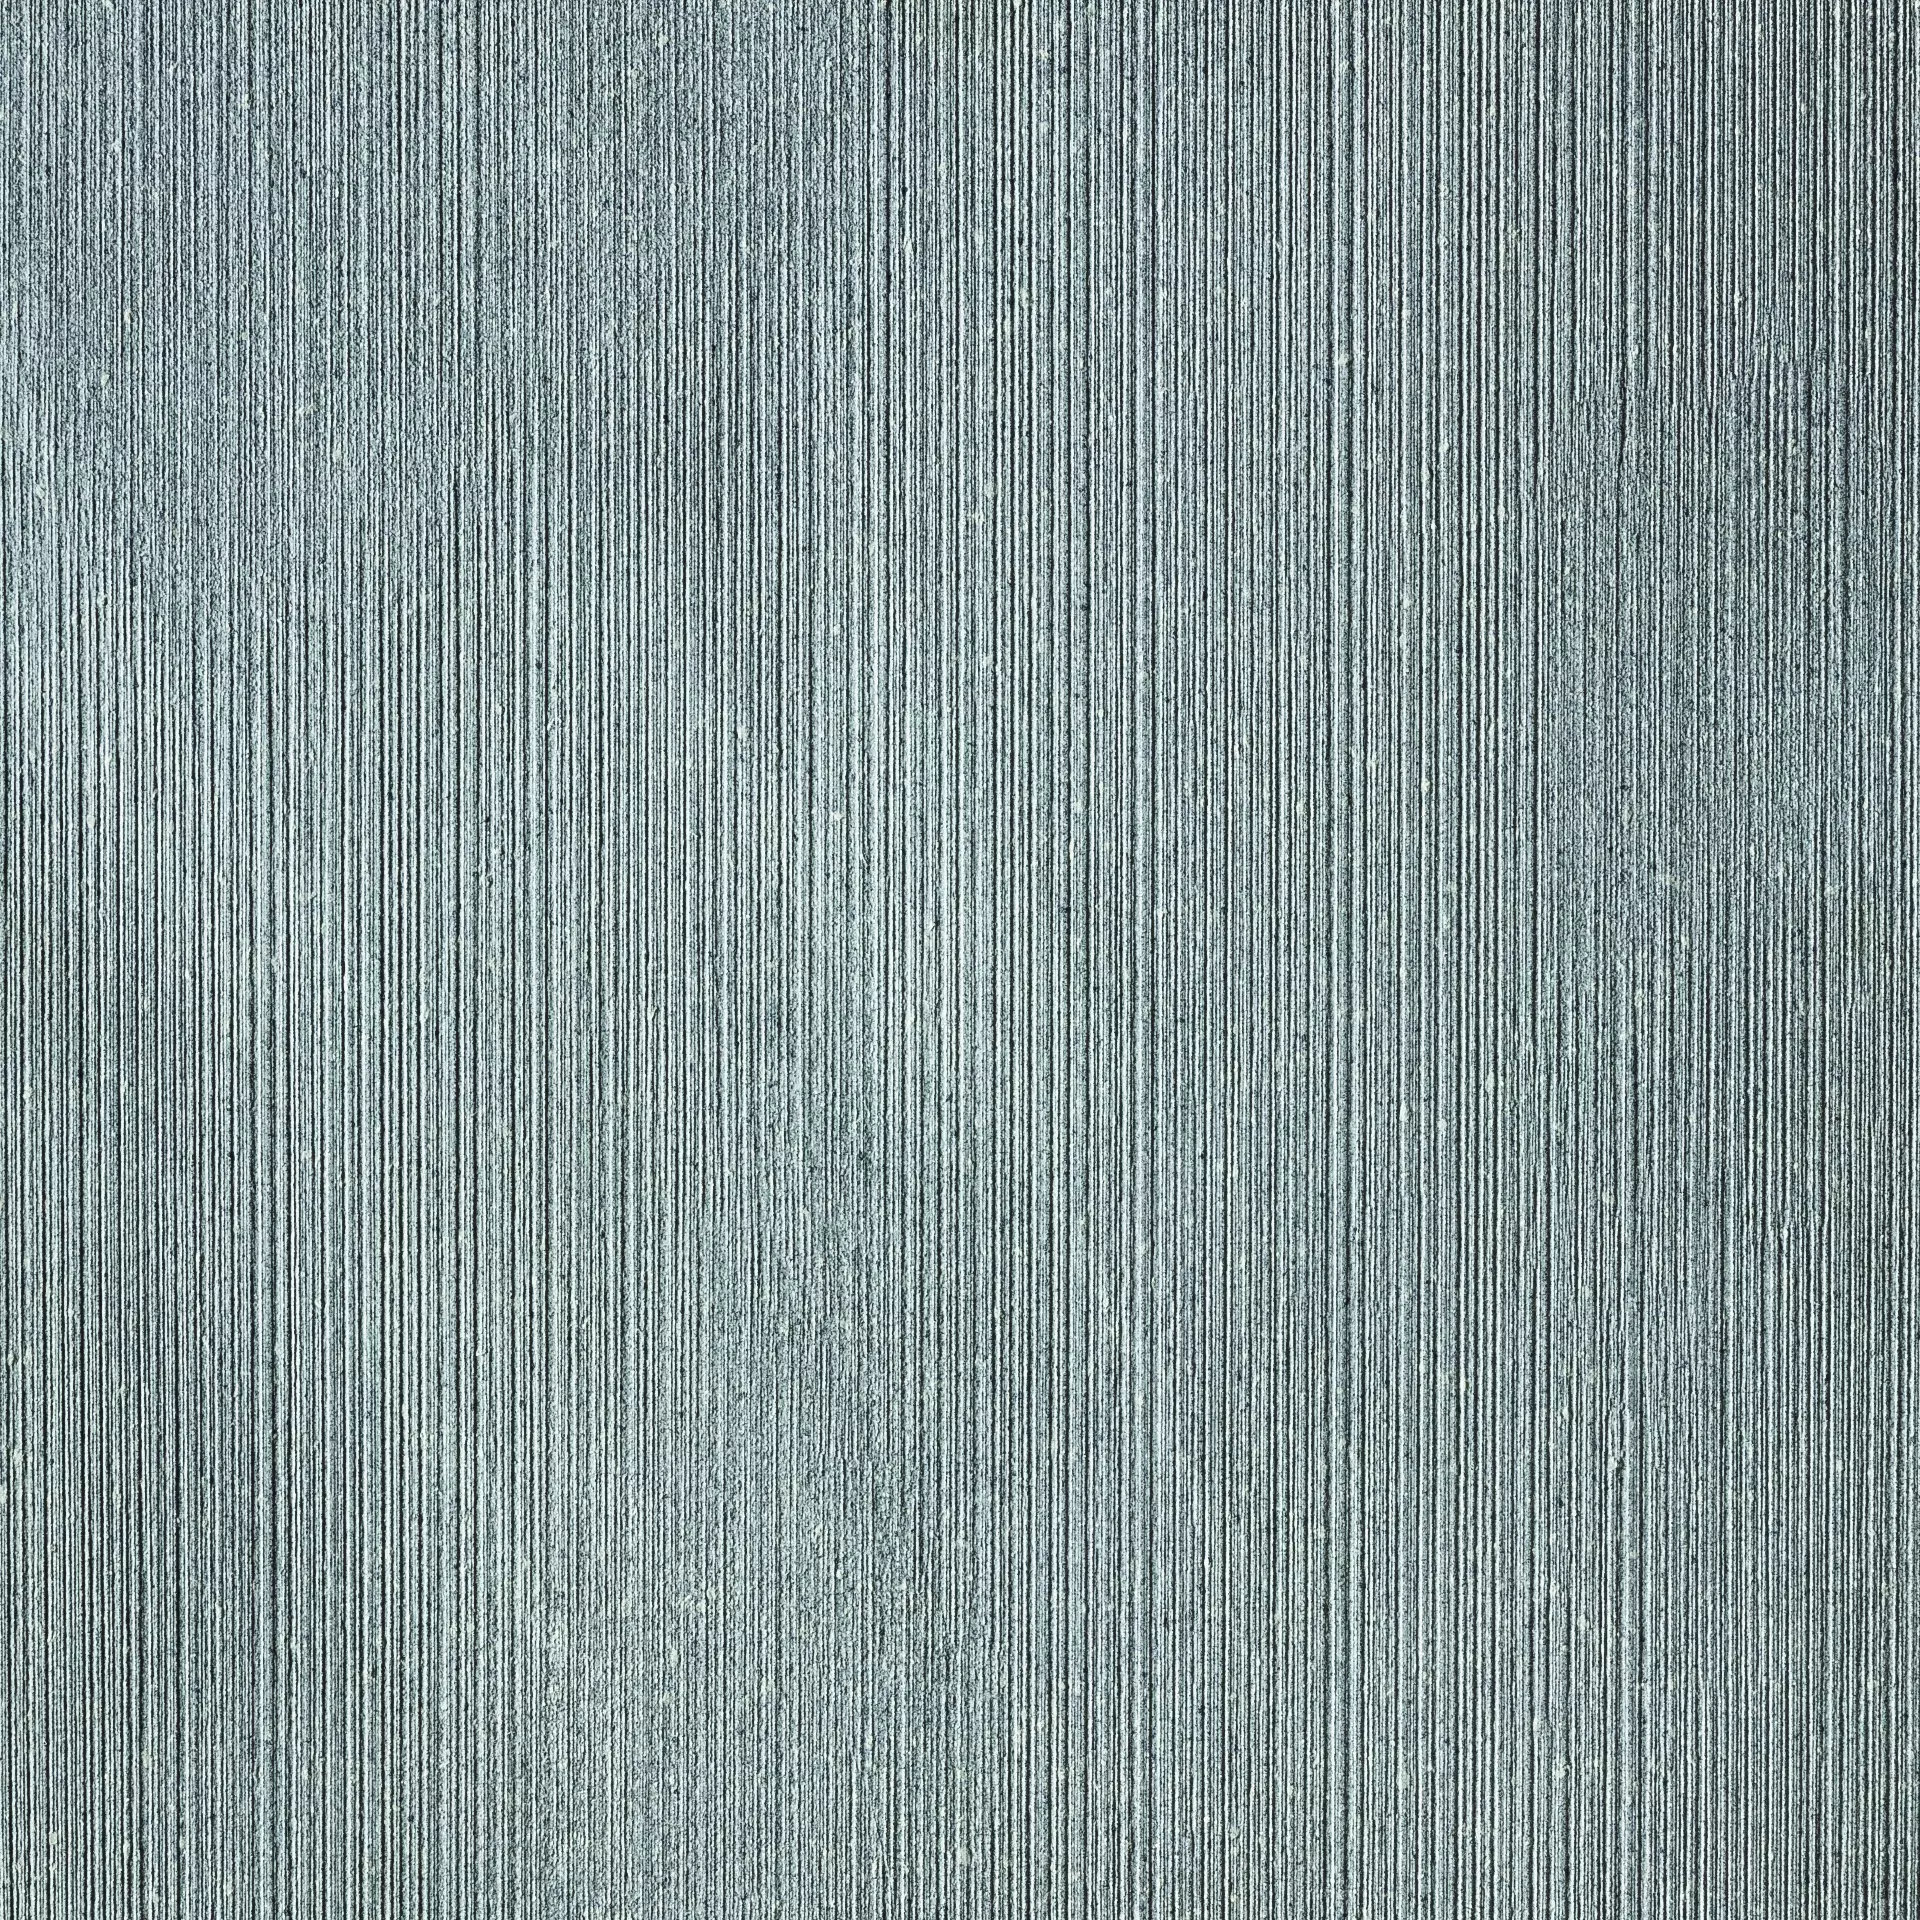 Rak Curton Grey Natural – Matt Decor Line A2D06PDCNGRYMMLN1R 60x60cm rectified 9mm